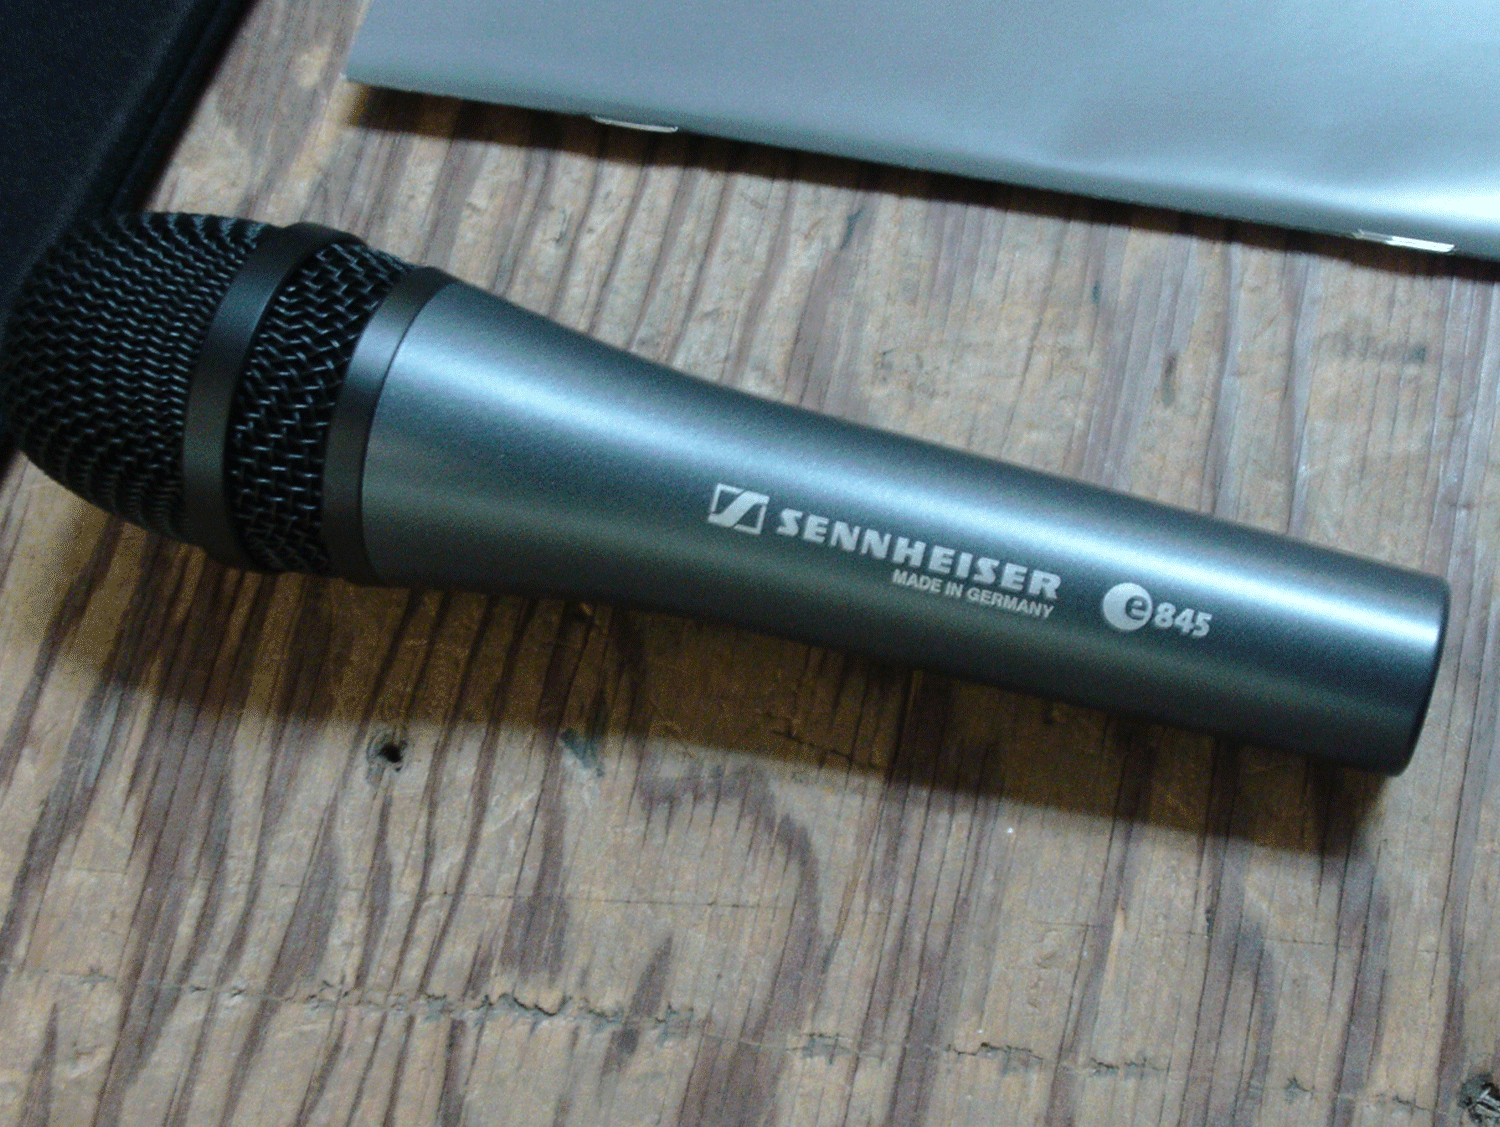 Sennheiser e845 Wired Microphone rent in srilanka